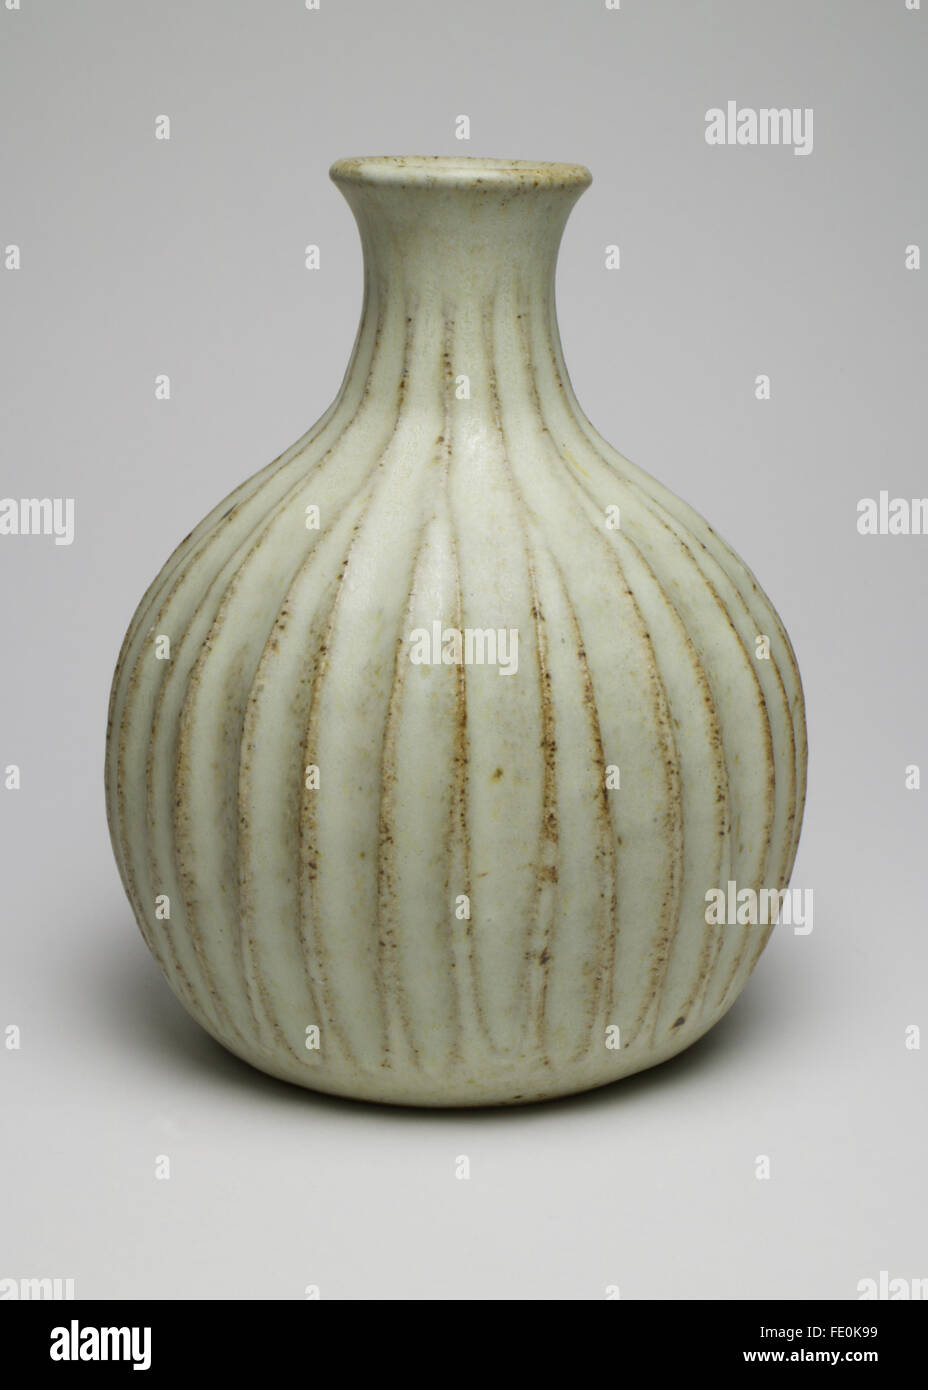 Elegante Peter Lane studio forma botella cerámica jarrón acanalados. El jarrón mide 14,5 cm de alto y tiene Peter Lane PL monograma a la Foto de stock